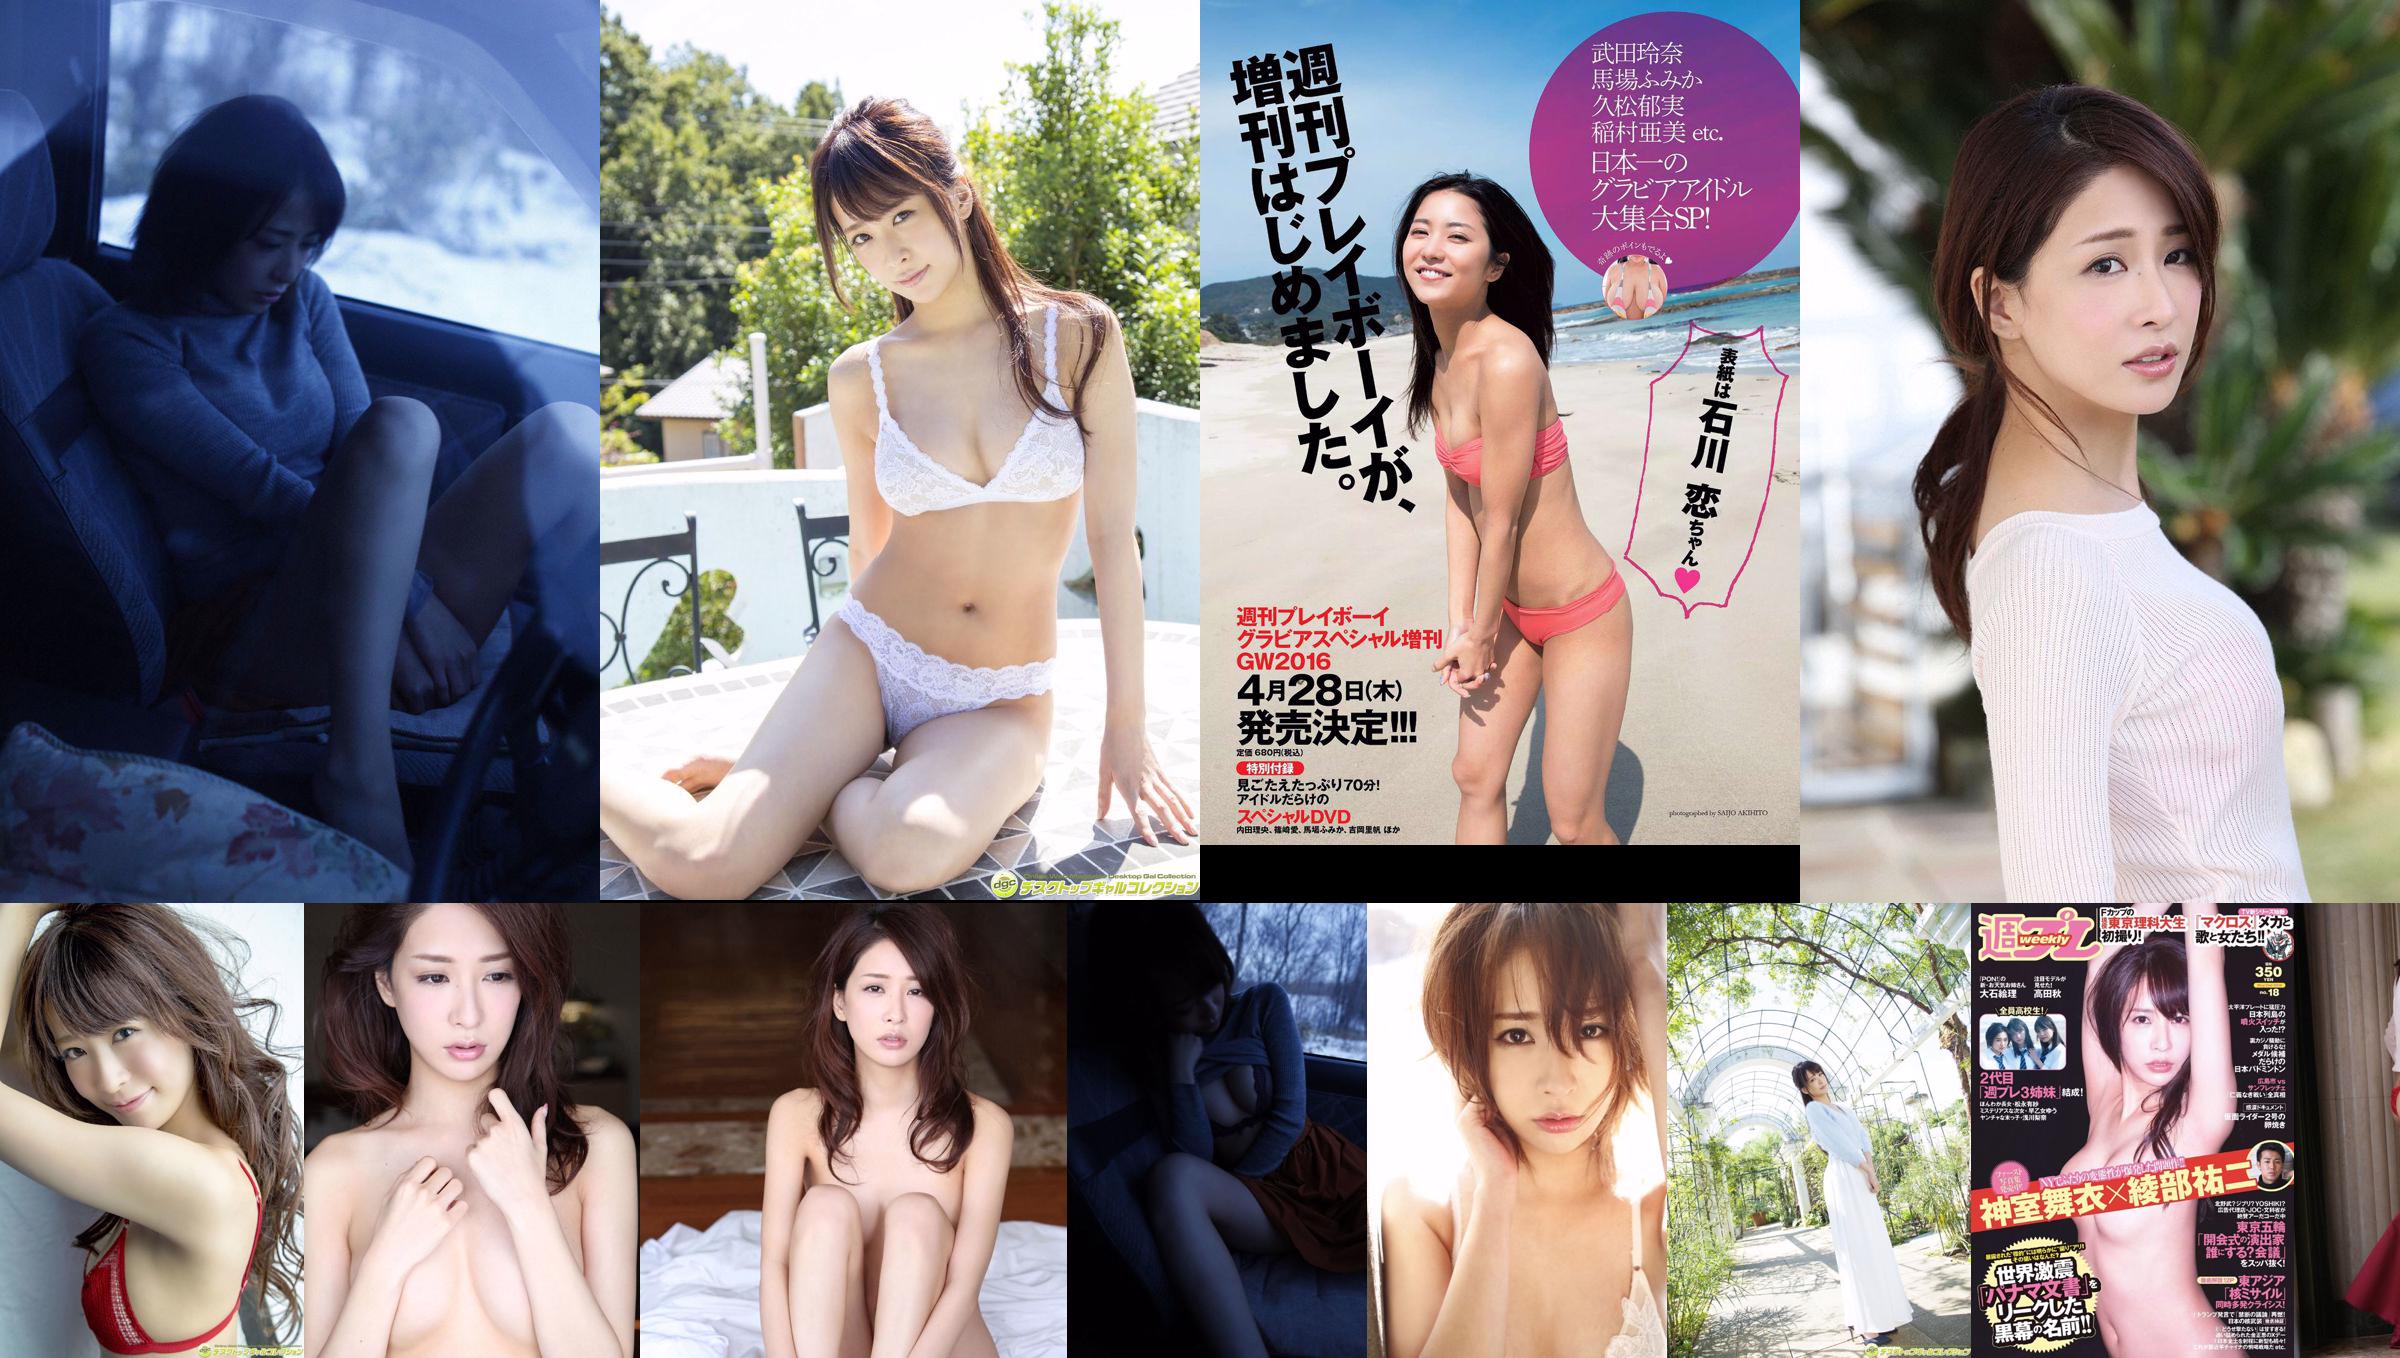 Mai Kamuro Arisa Matsunaga Yu Saotome Rina Asakawa Shu Takada Ayana Takeda Eri Oishi [Weekly Playboy] 2016 No.18 Foto No.d593b4 Halaman 1